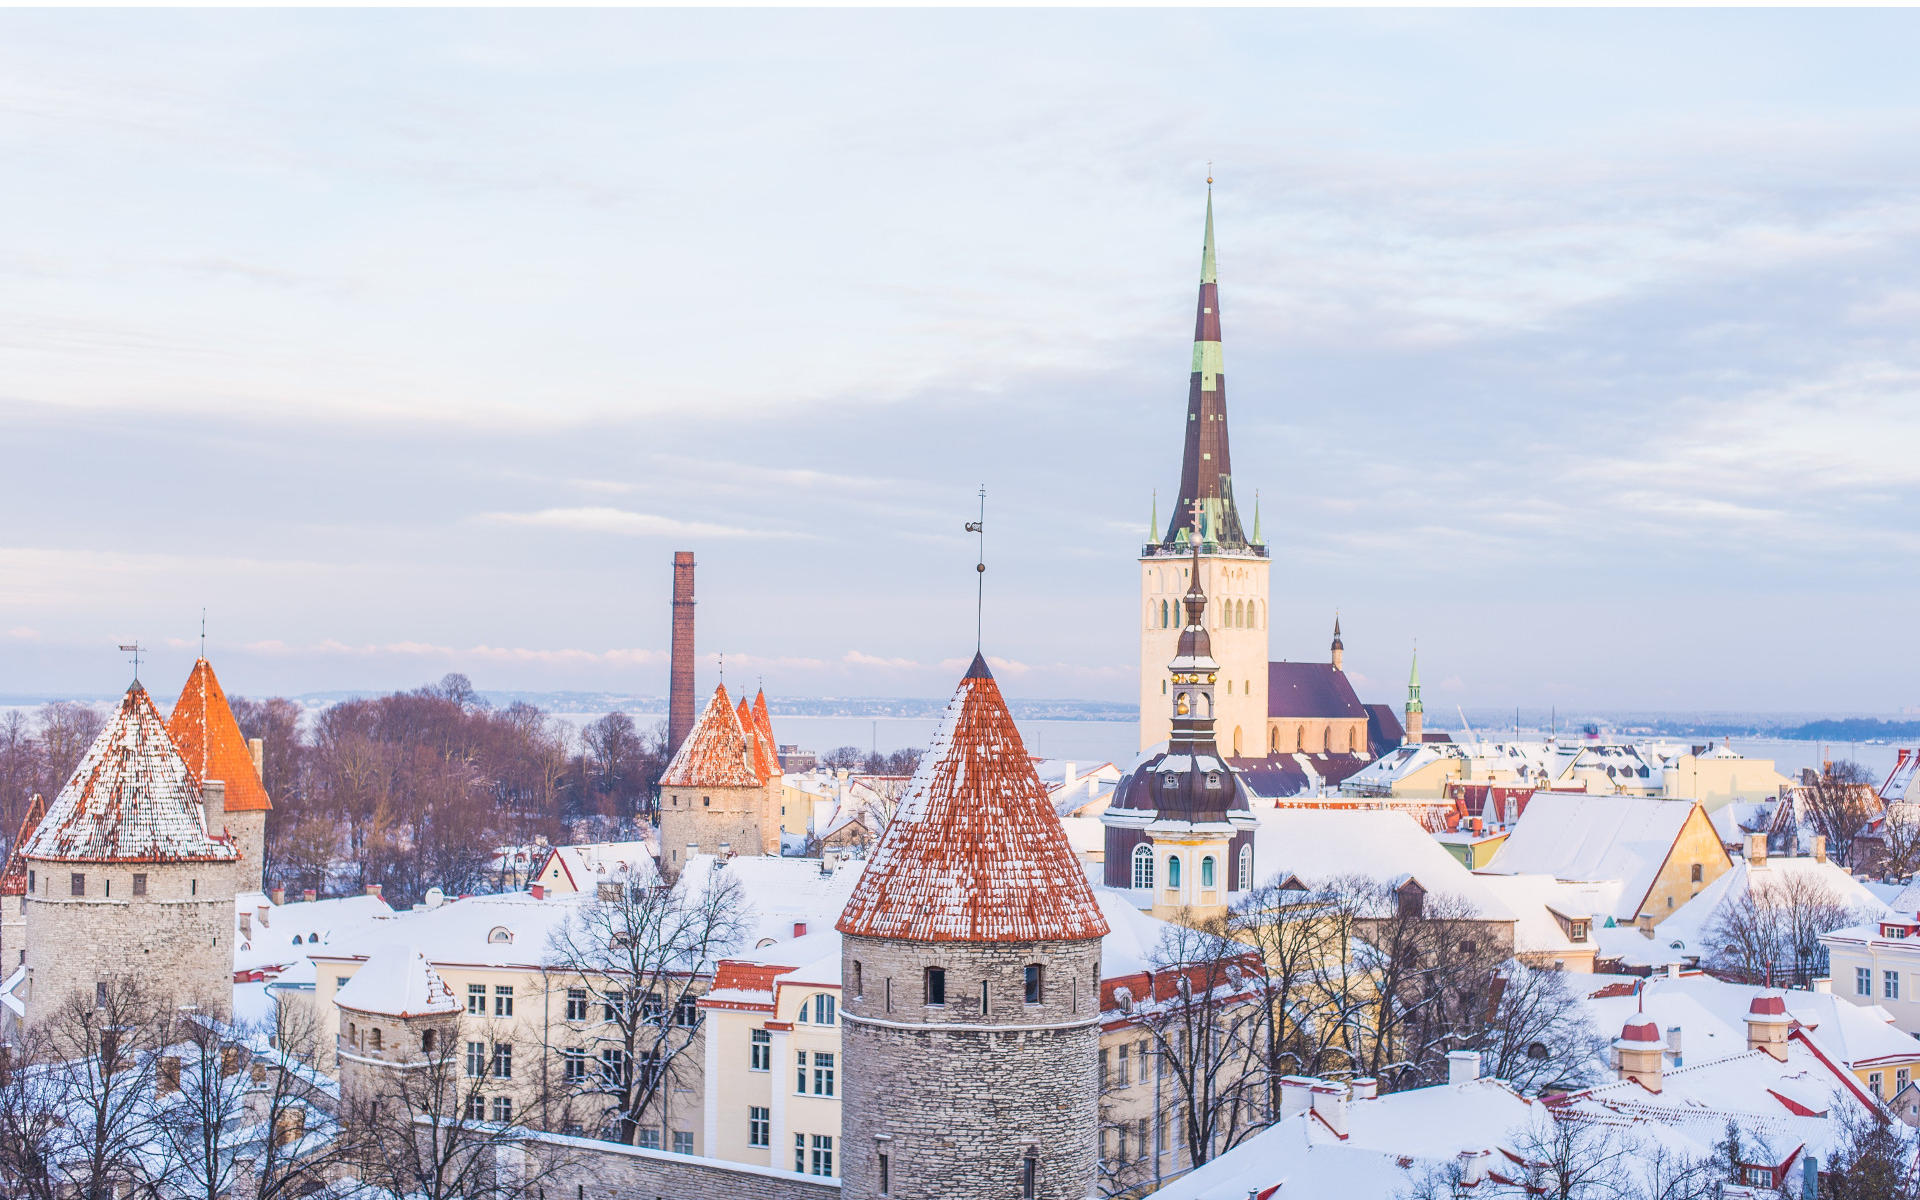 Auf den Spitzdächern von Tallinns Altstadt liegt Schnee.